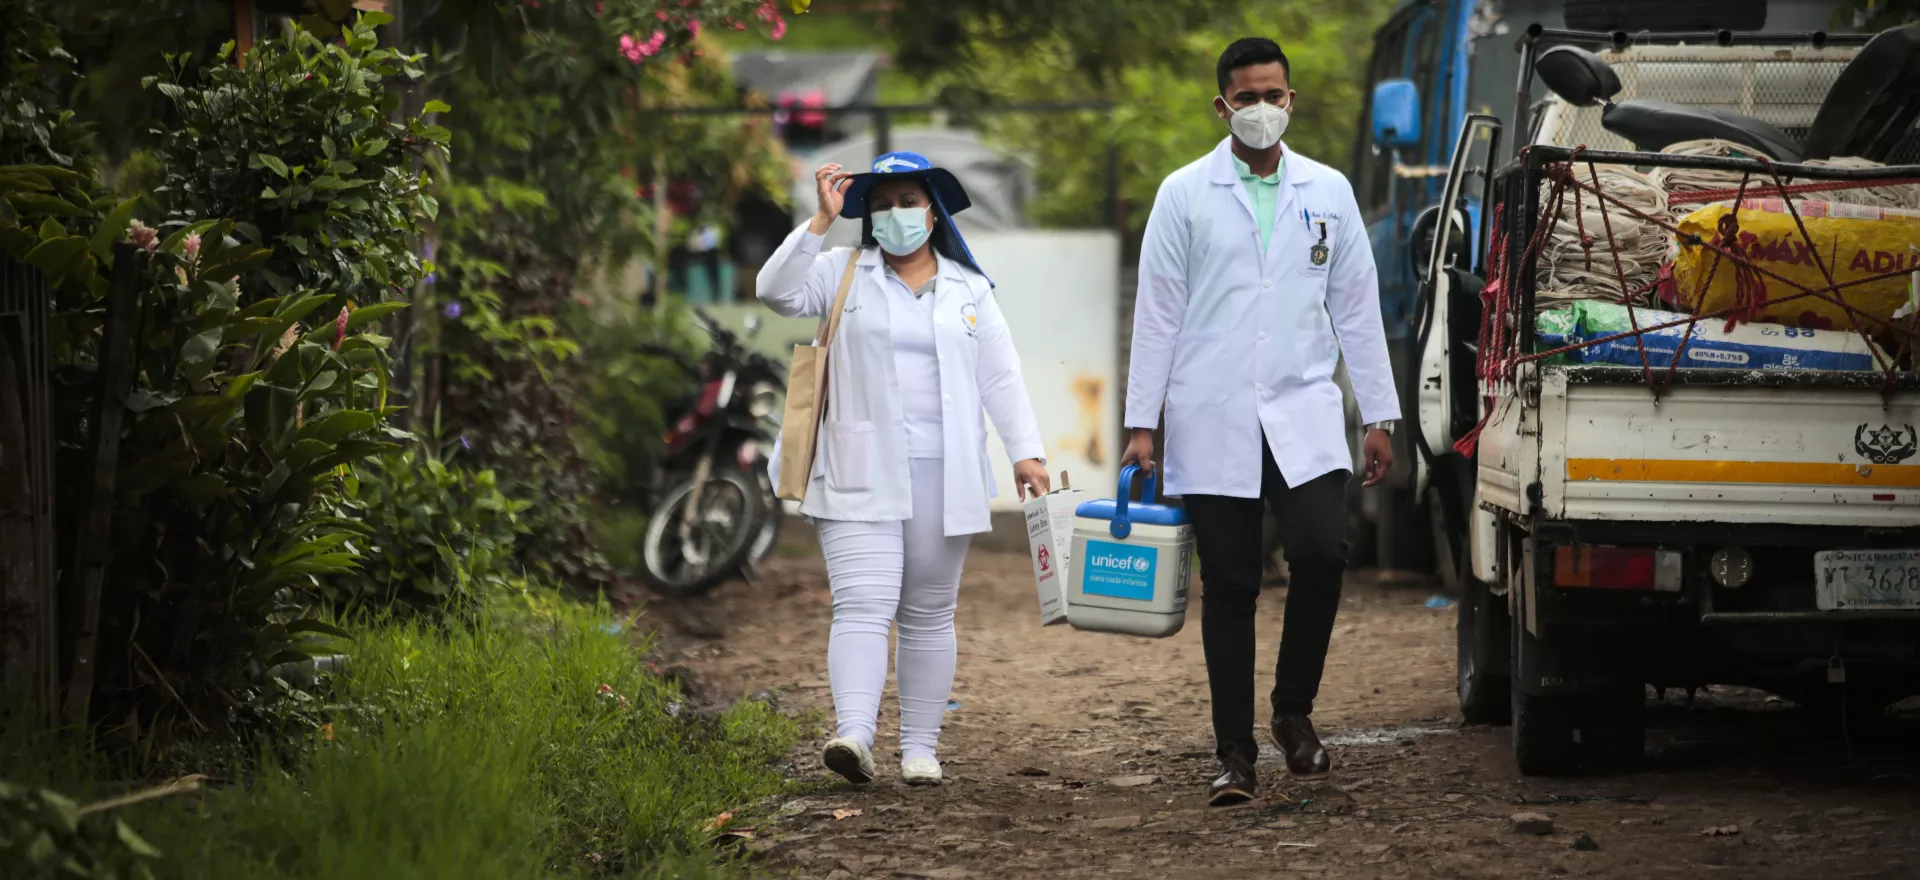 Deux agents de santé vêtus de blouses blanches marchent dans une rue. 